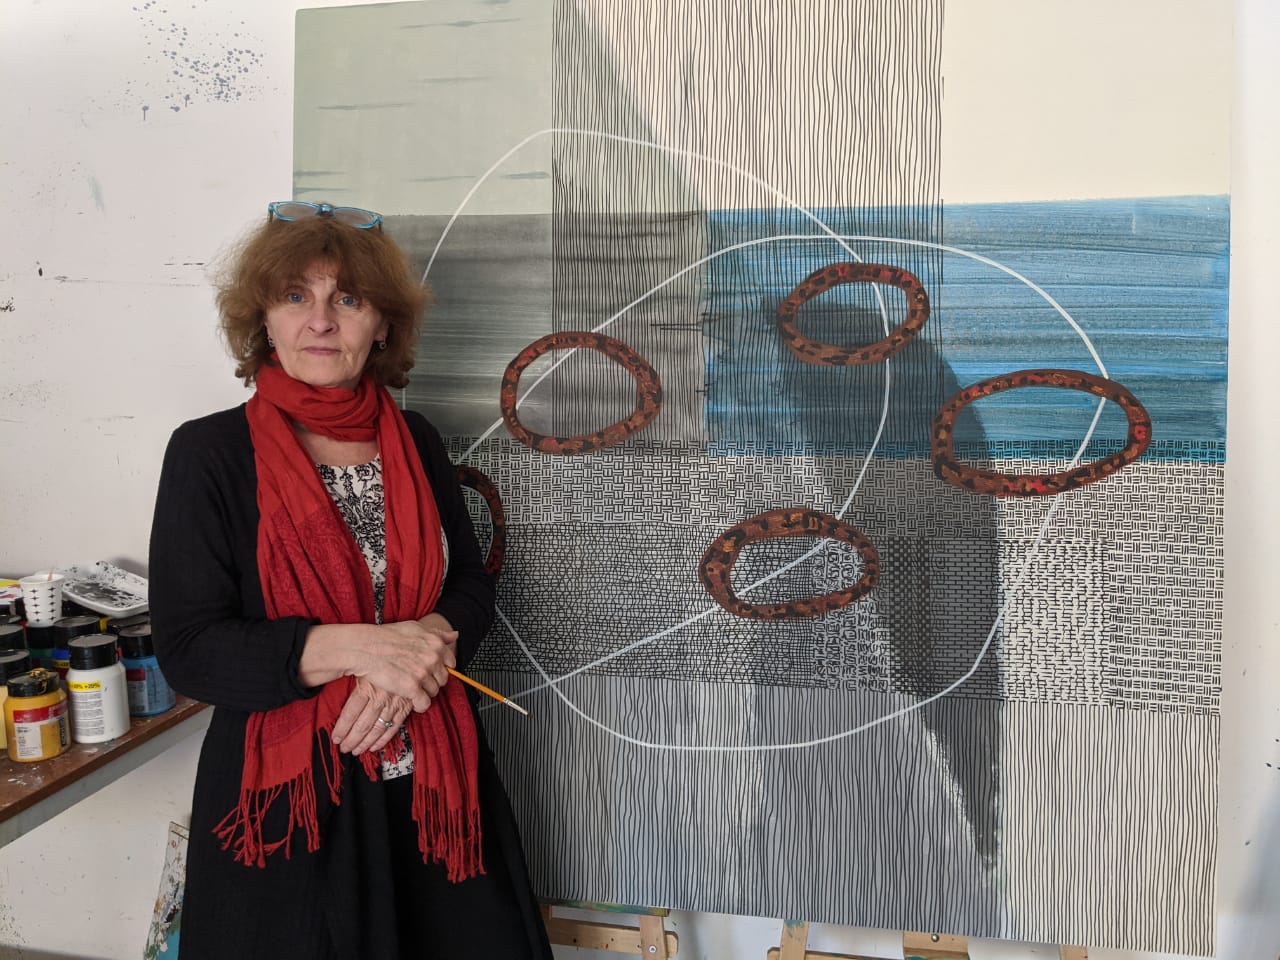 Художница Ирина Лавриненко отразила борьбу против вируса Covid-19 на своих полотнах, подготовленных специально для Кипрского Музея Современного Искусства